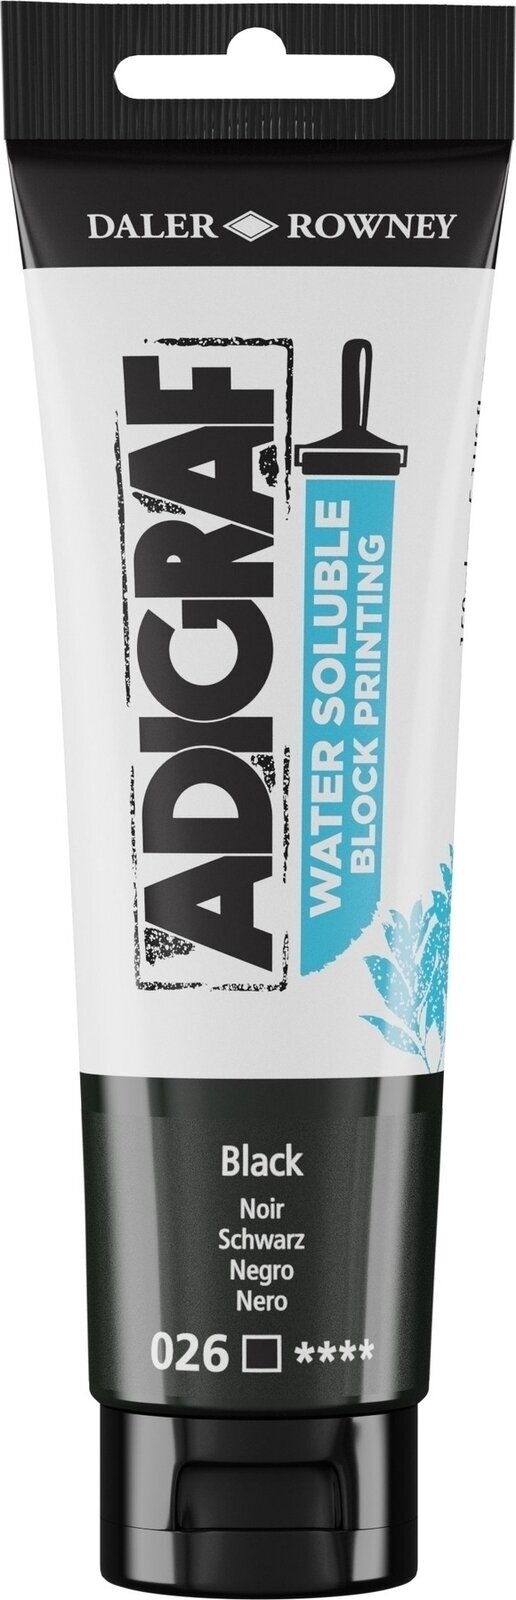 Boja za linorez Daler Rowney Adigraf Block Printing Water Soluble Colour Boja za linorez Black 150 ml